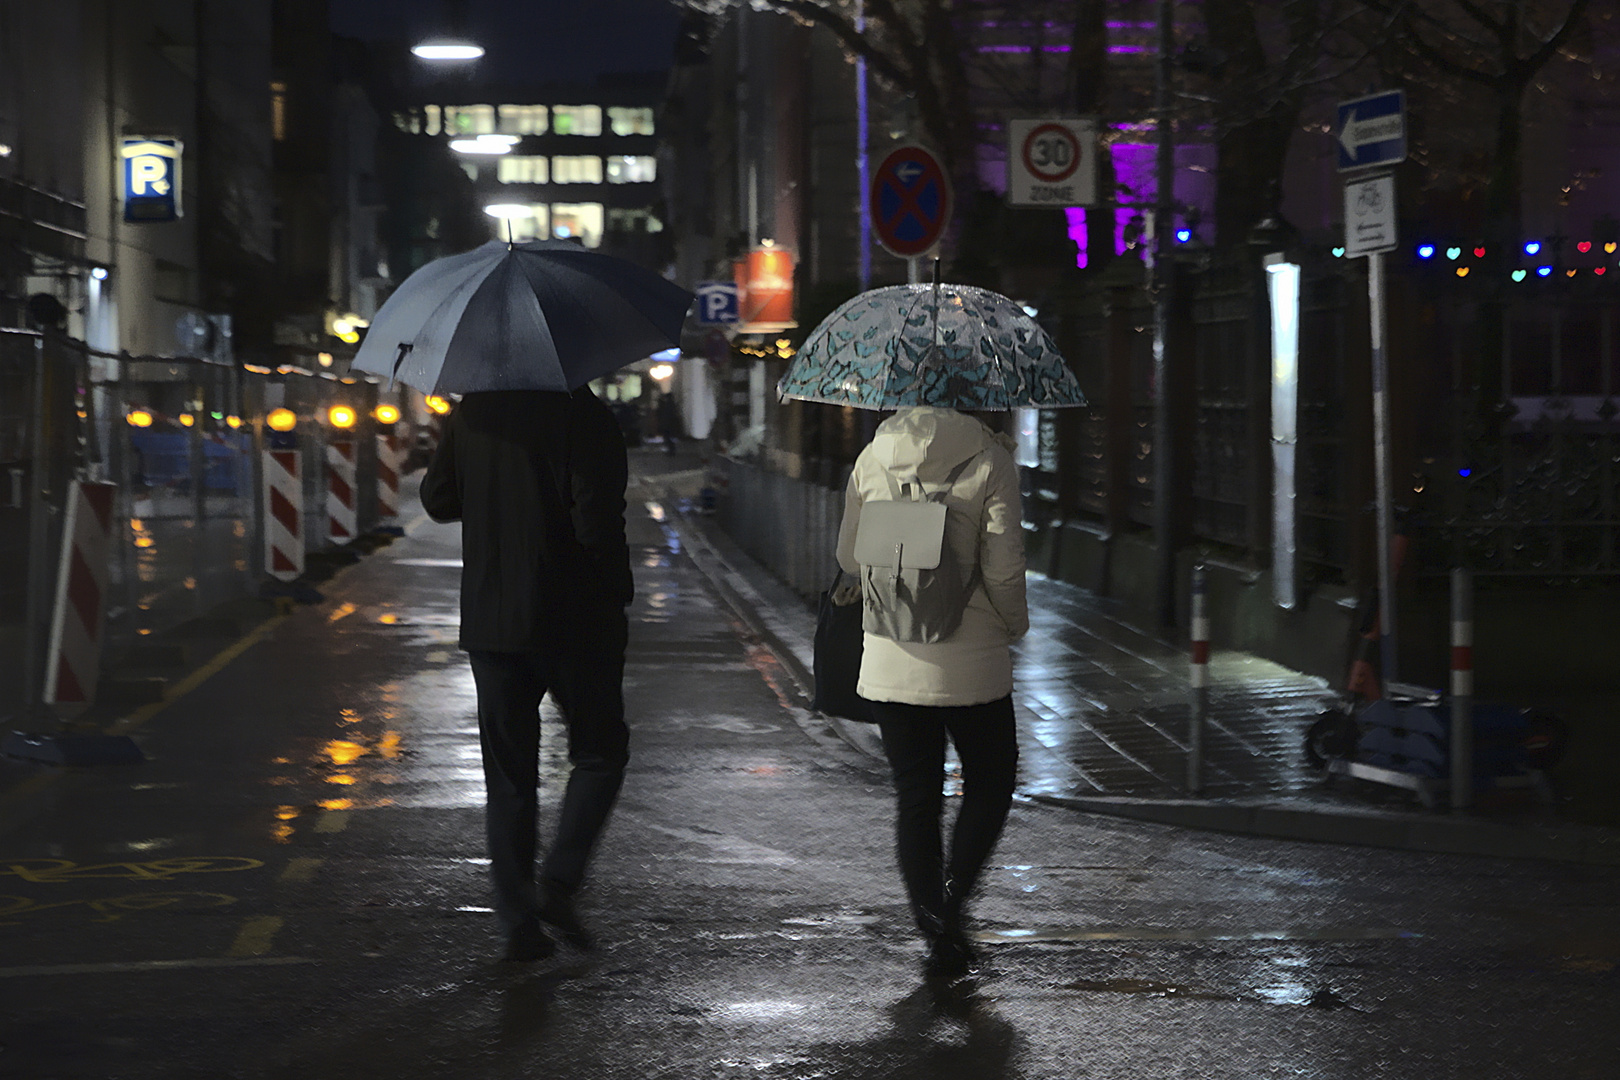 Abends im Regen auf der Straße